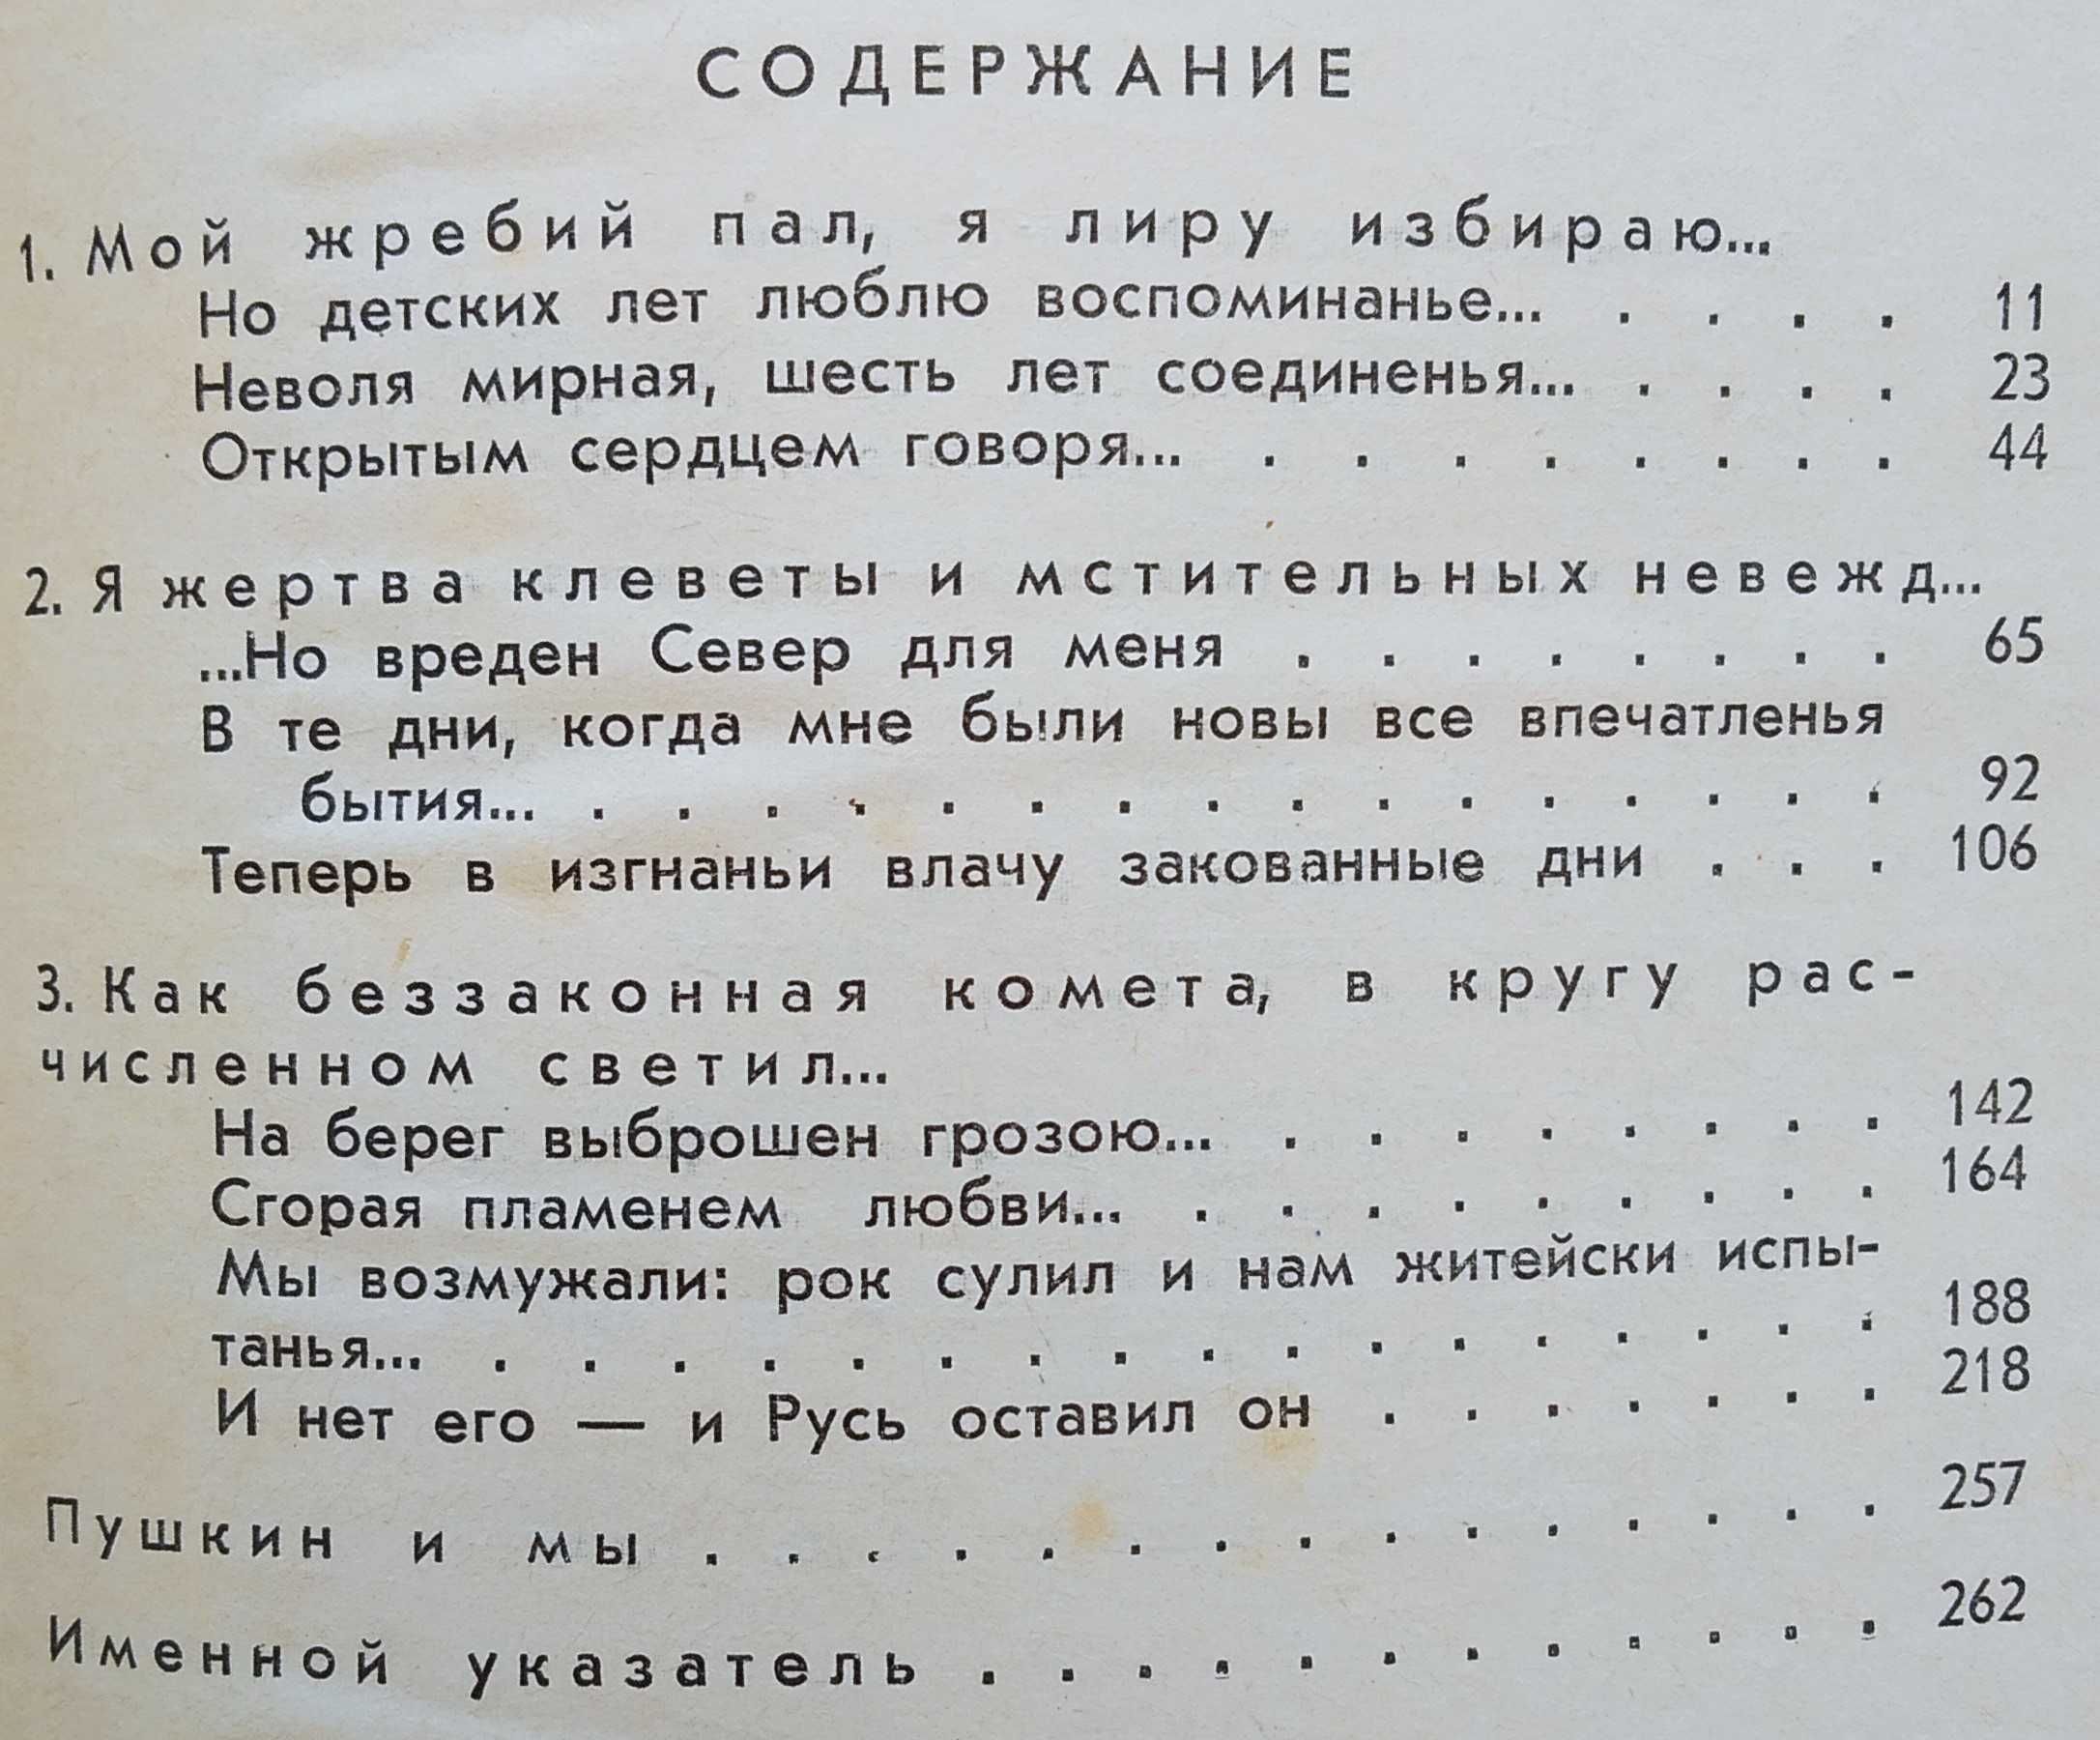 Марк Сергеев. Вся жизнь - один чудесный миг (Пушкин). Композиция. 1969